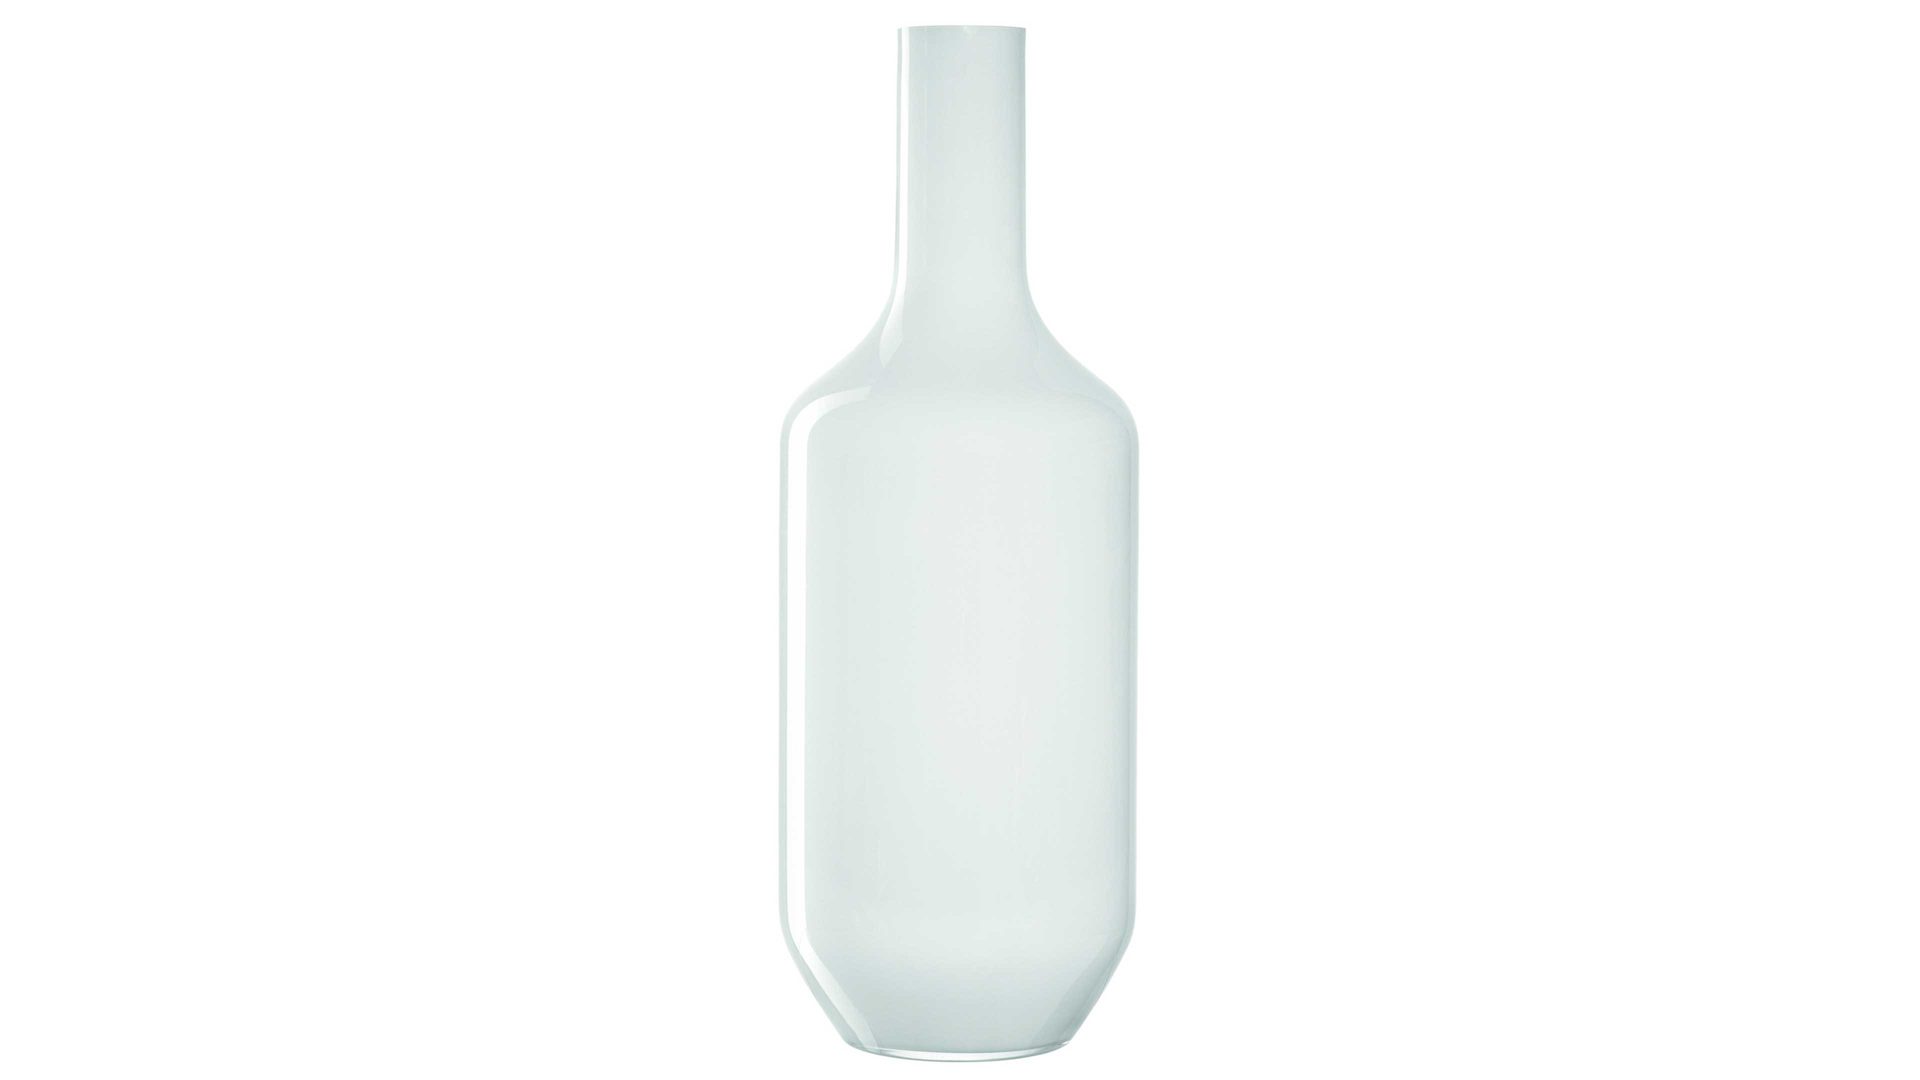 Vase Leonardo | glaskoch aus Glas in Weiß LEONARDO Vase Milano weißes Glas – Höhe ca. 64 cm